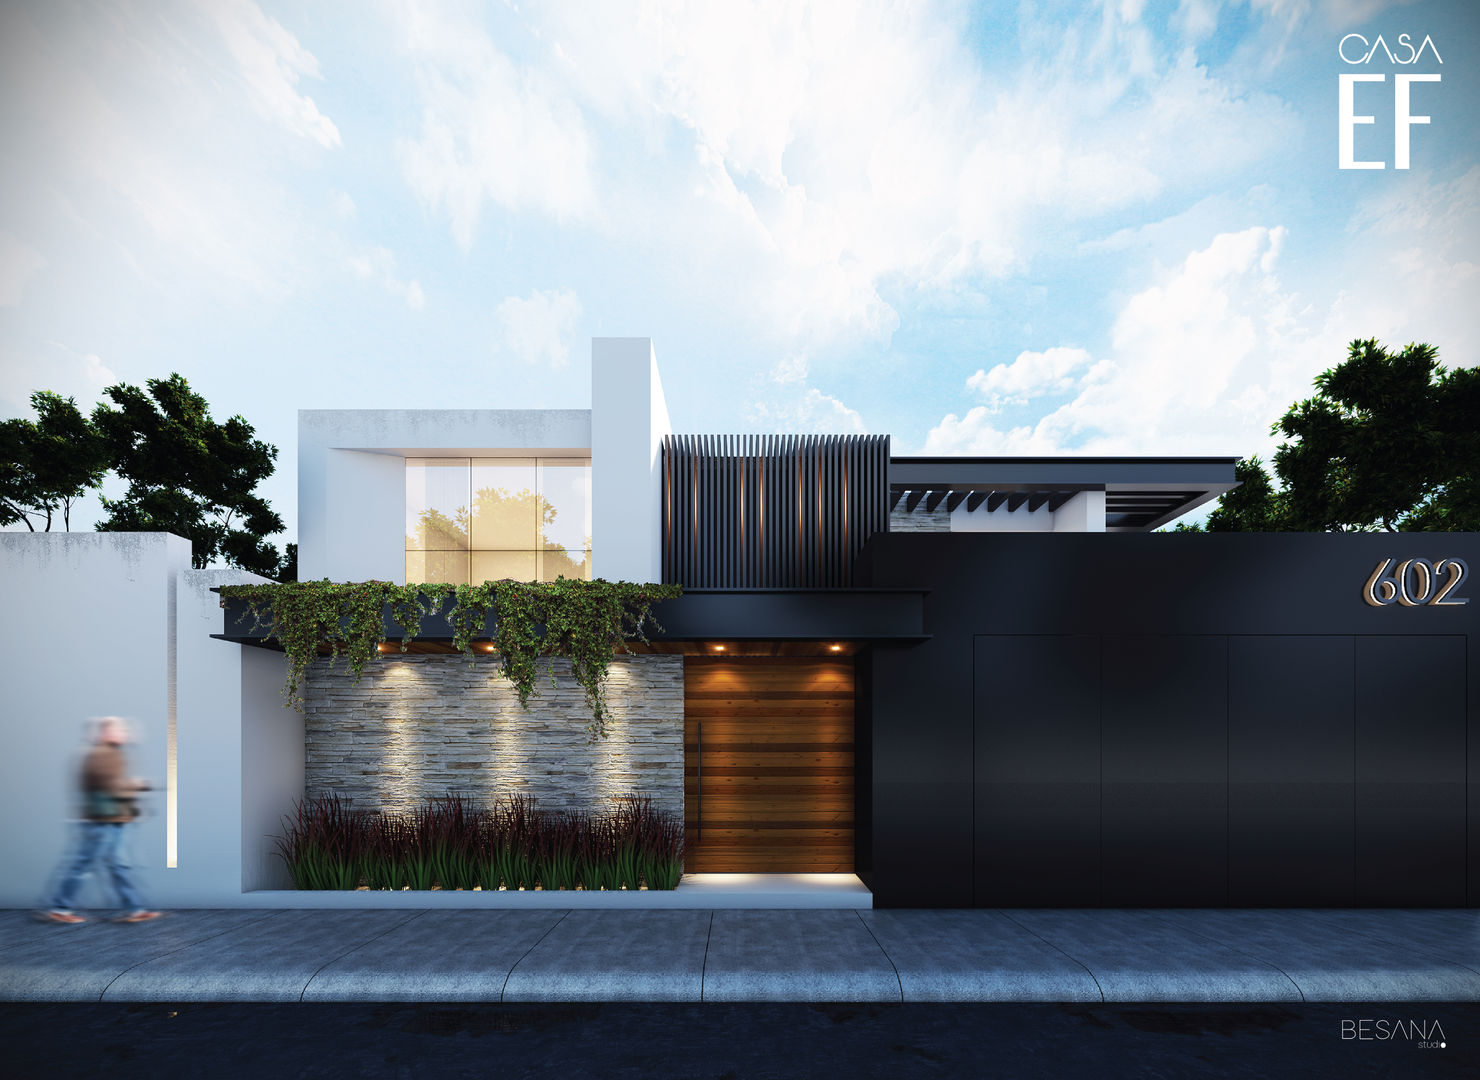 Propuesta de fachada exterior 1 Besana Studio Casas minimalistas